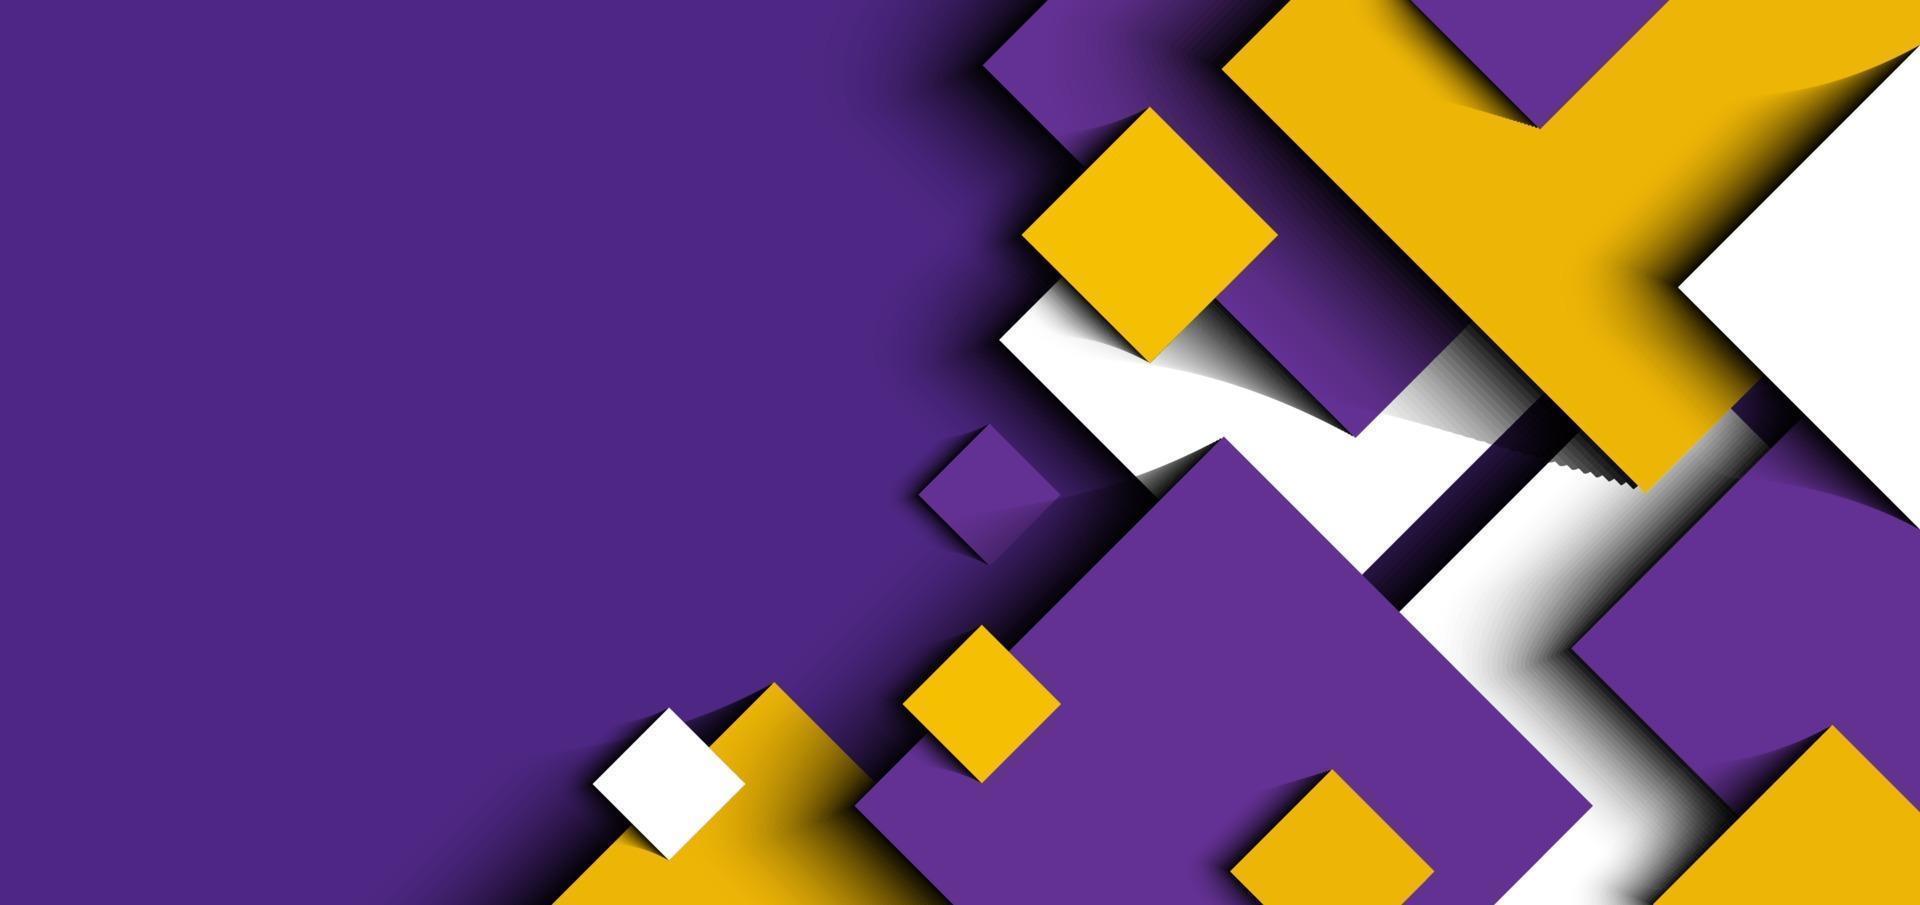 Abstrait 3d violet, jaune, blanc carrés géométriques forme papier découpé style vecteur